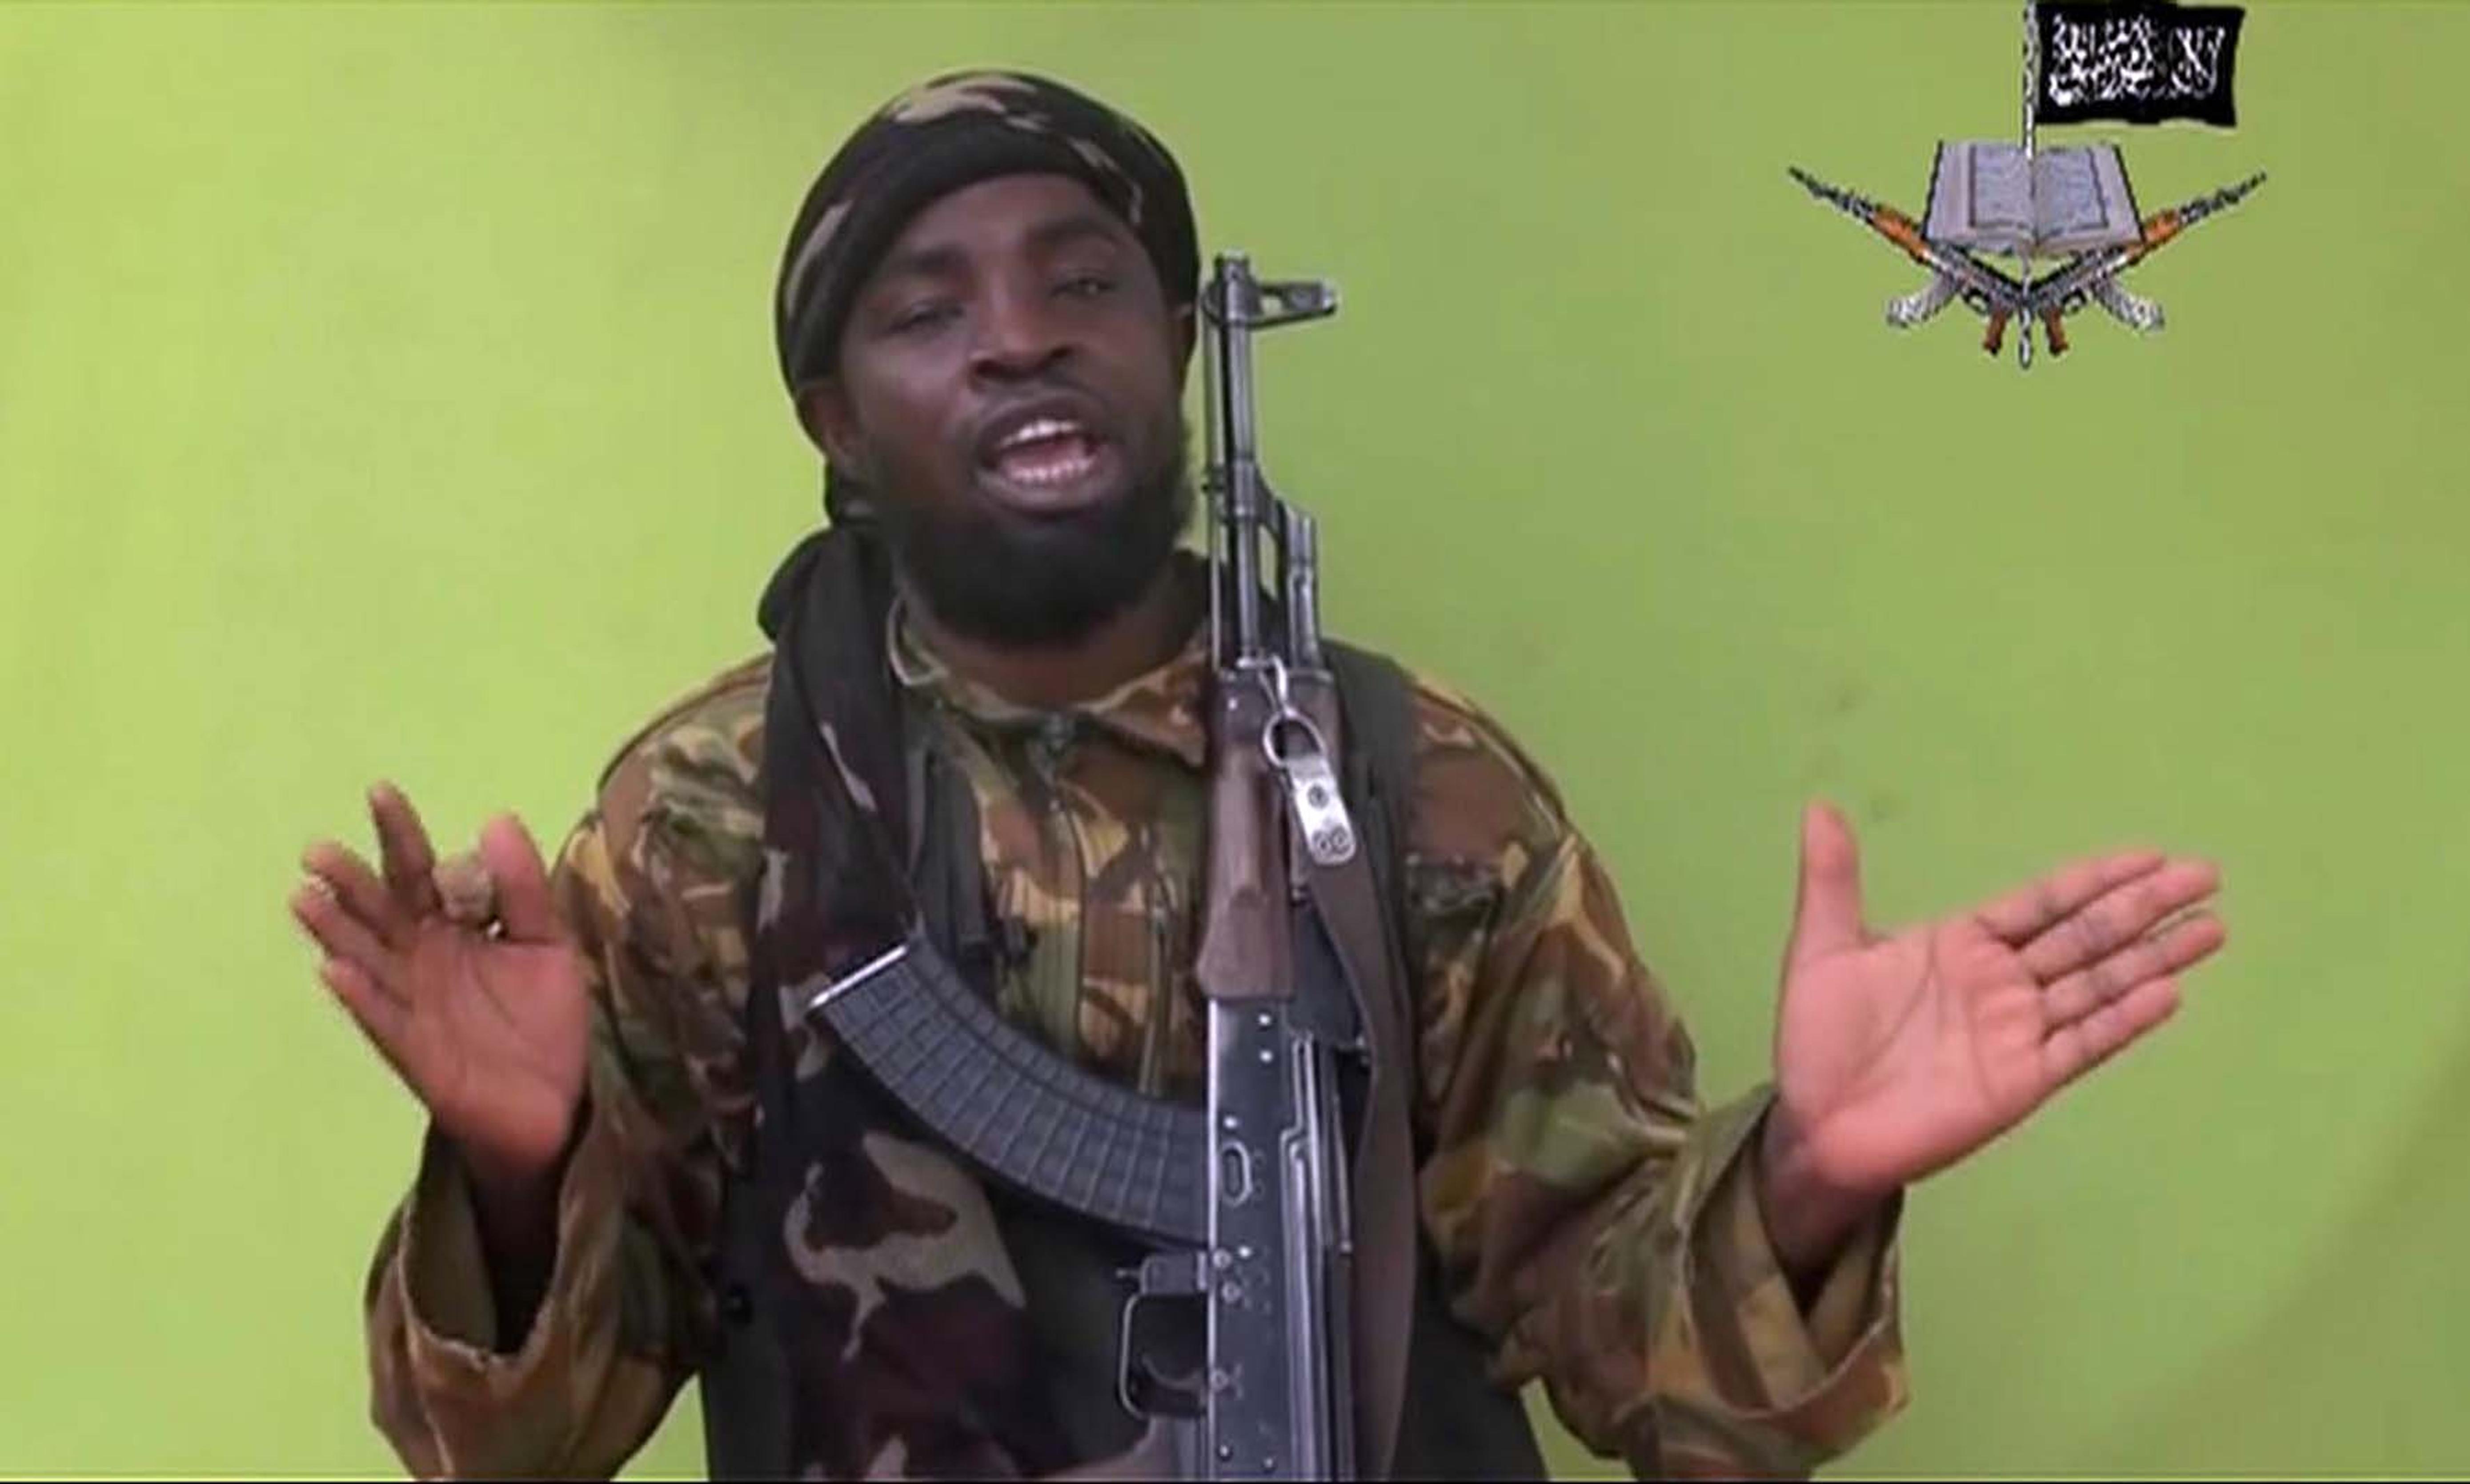 Lederen i Boko Haram skal være død